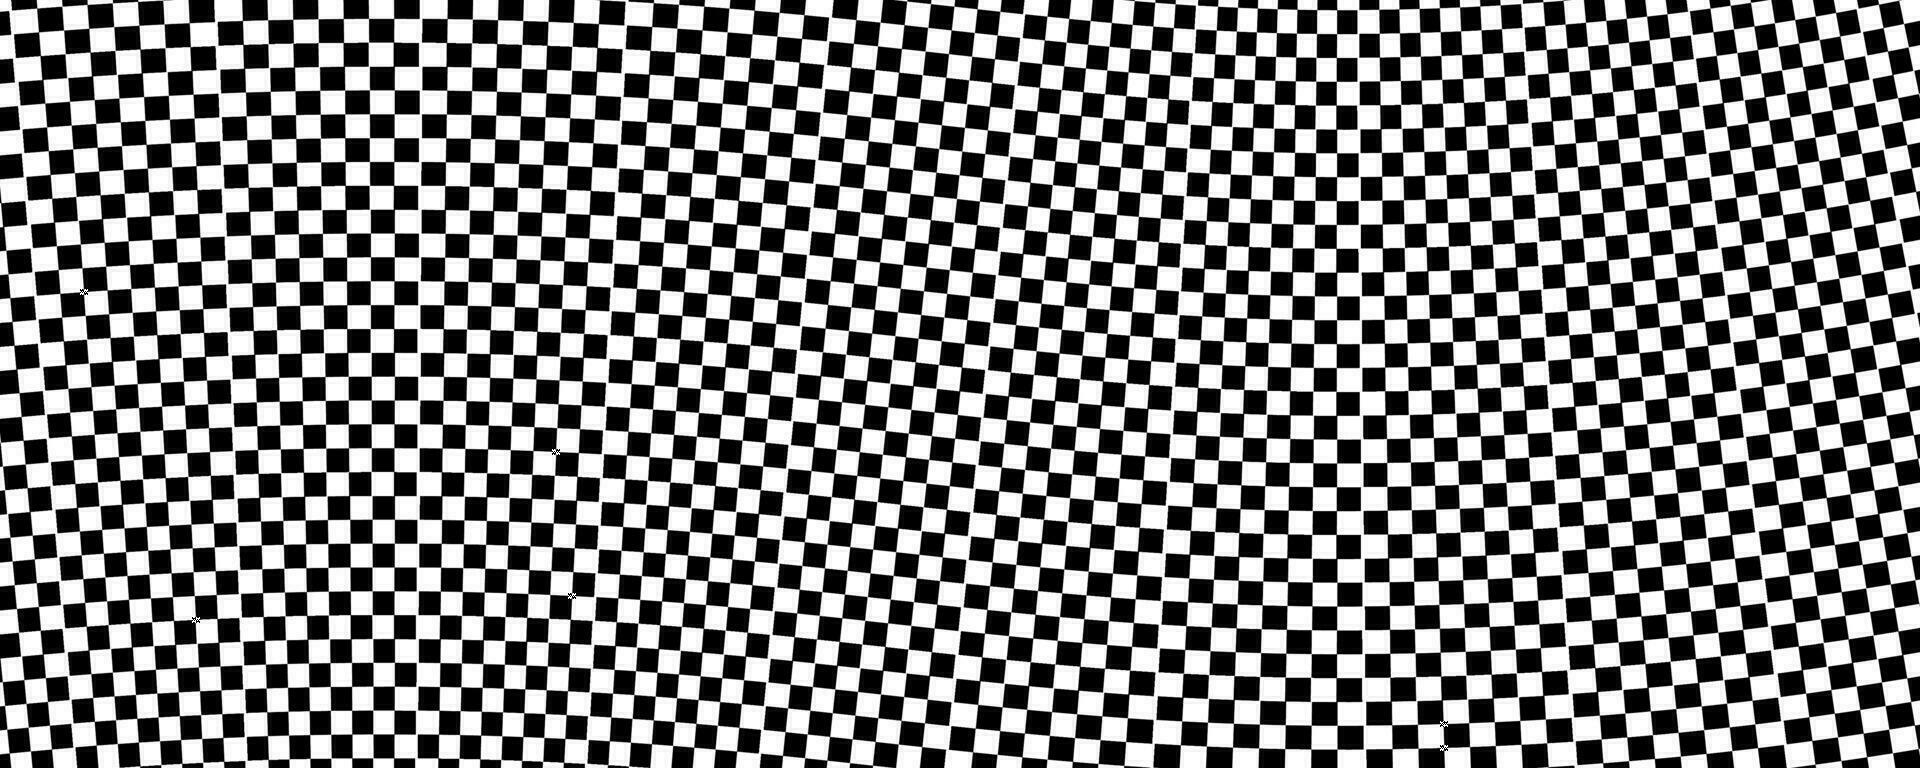 zwart wit geruit patroon vector